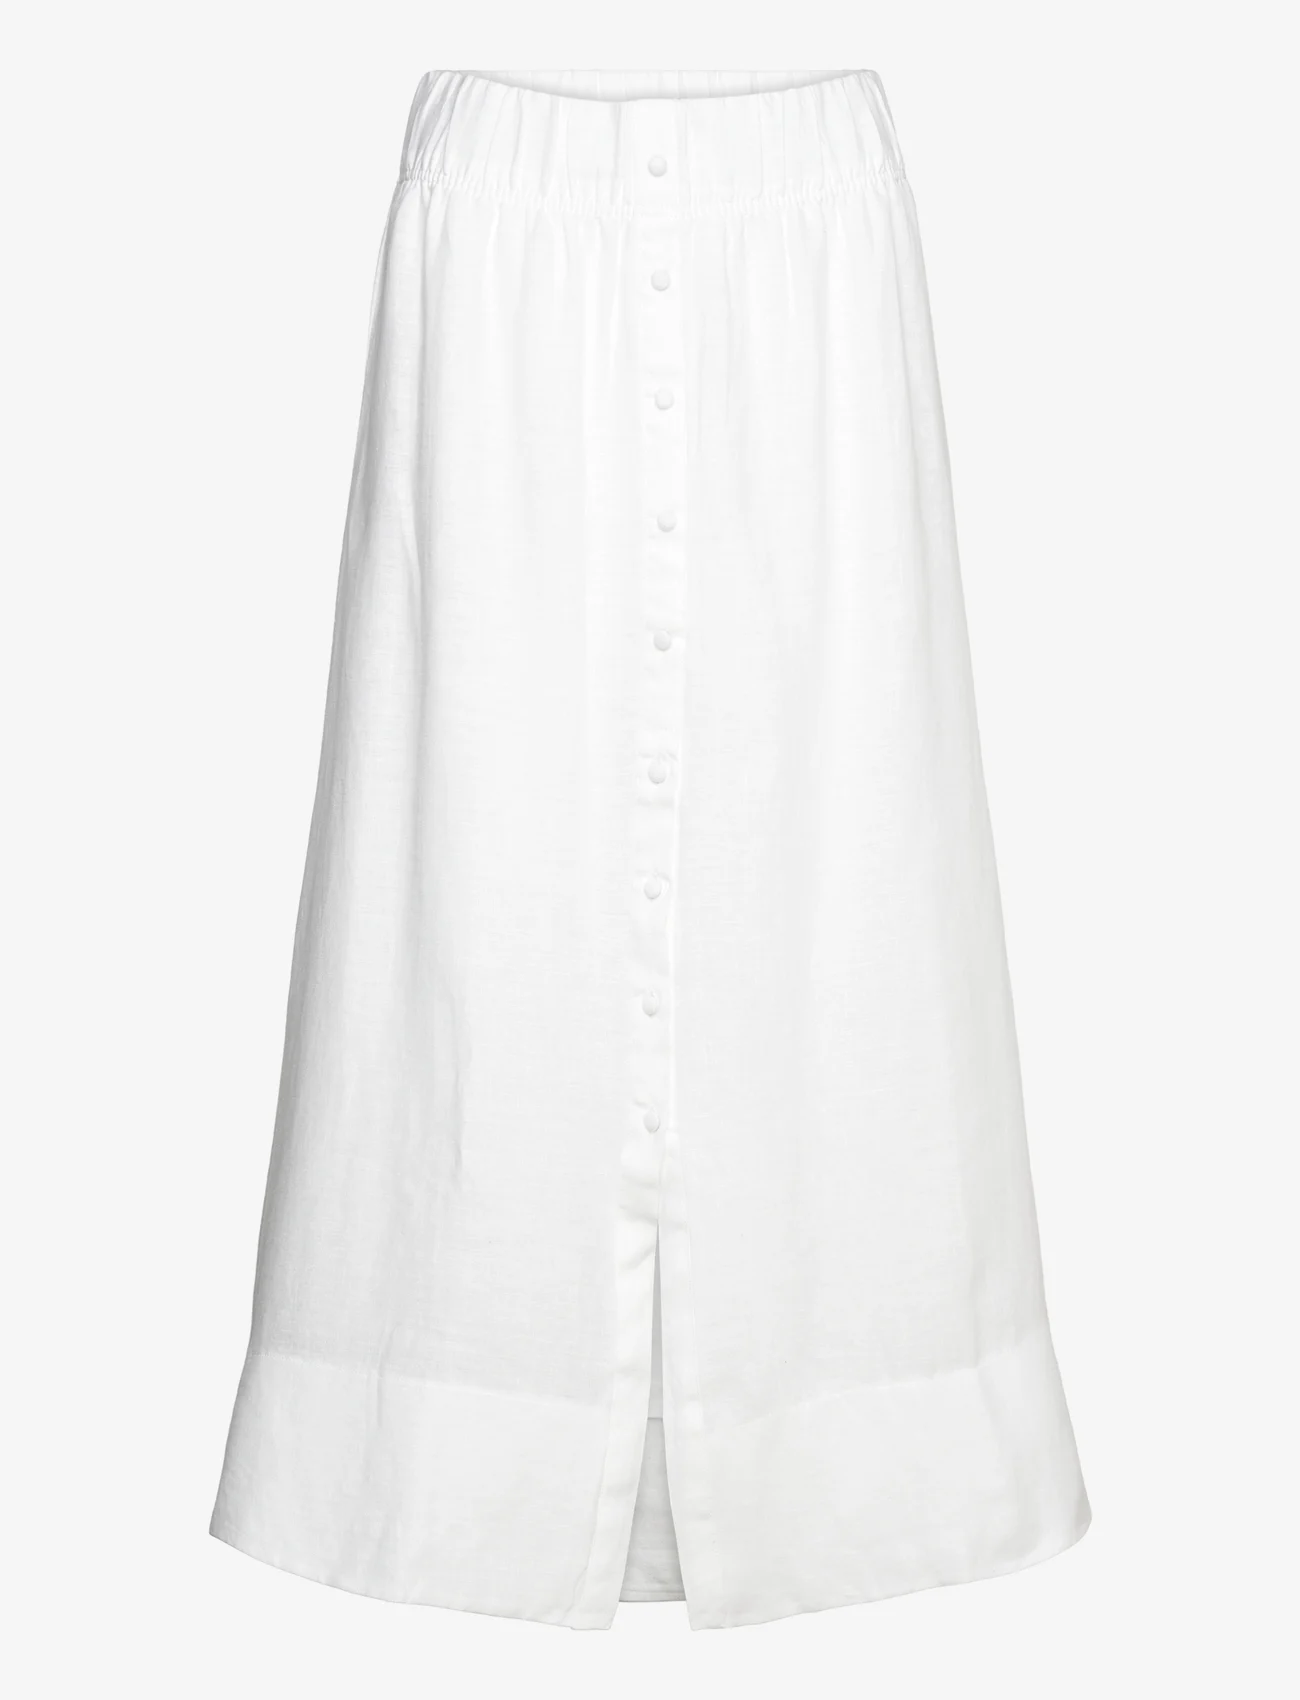 ella&il - Thea linen skirt - maxi röcke - white - 0